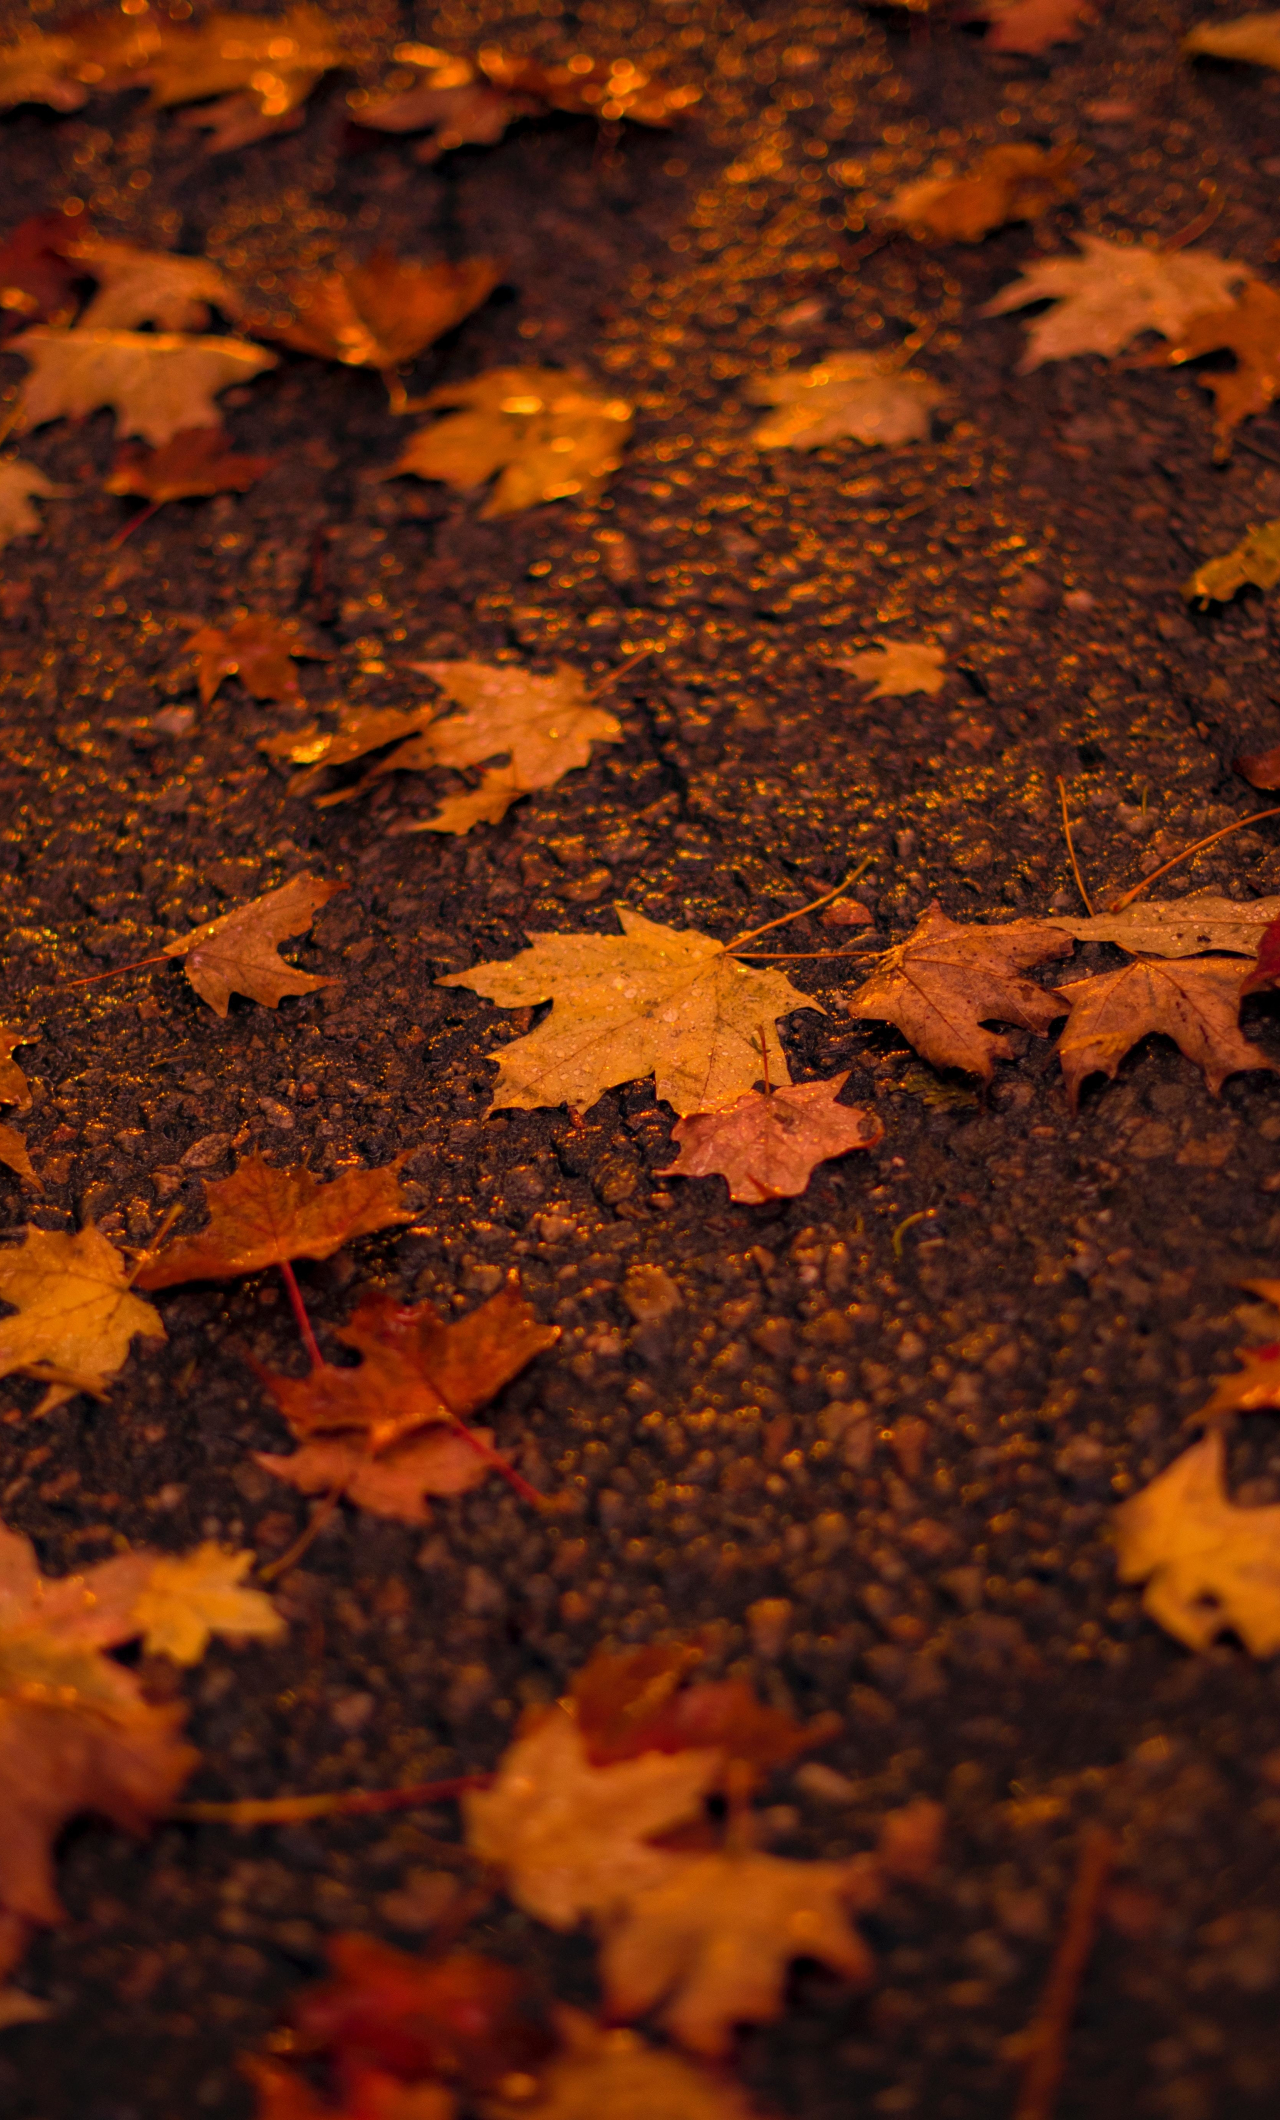 Lá thu (Autumn leaves) - Lá thu là một trong những thứ gì đẹp nhất của mùa thu với sắc cam, đỏ, vàng rực rỡ. Bức ảnh về lá thu này sẽ mang đến cho bạn sự điềm tĩnh và cảm giác thư giãn, giúp ban tìm lại hơi thở của cuộc sống tươi đẹp.